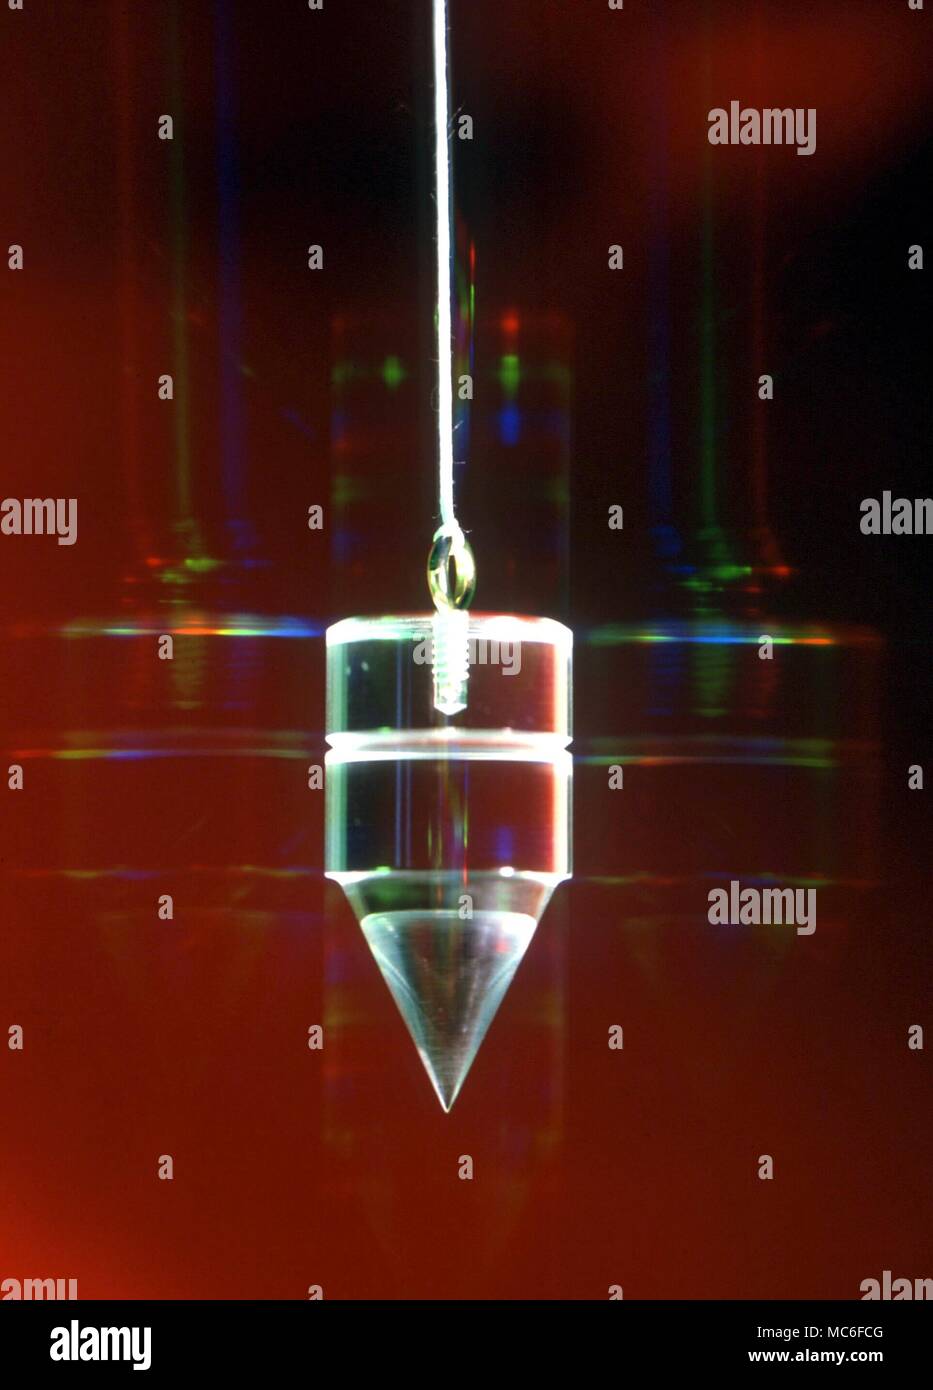 Radioestesia - pendolo pendolo traslucido, fotografati con galaxy effetto arcobaleno auric sfondo Foto Stock